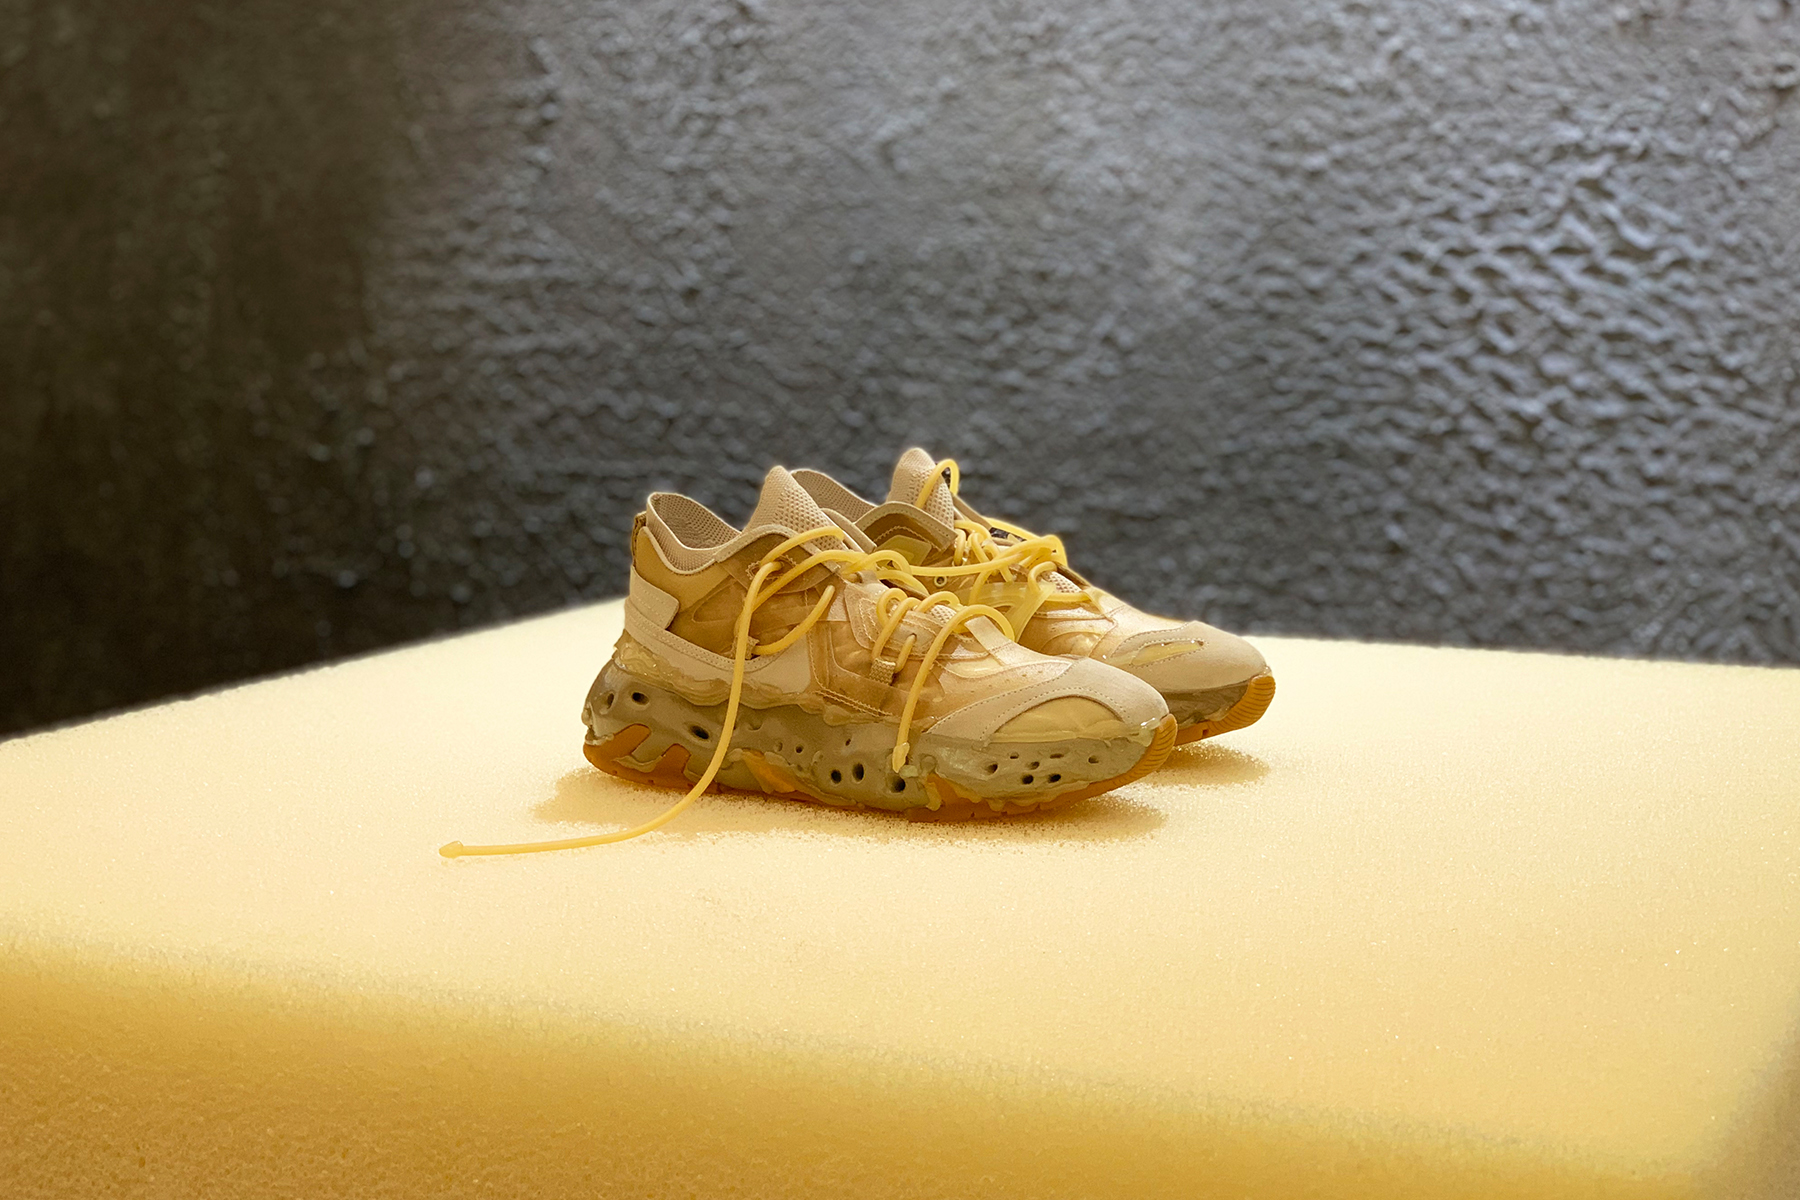 新晋设计品牌 KING’S KNIGHT’S PAWN 发布首款 4D 打印球鞋「PORTAL BUZZ 4D」